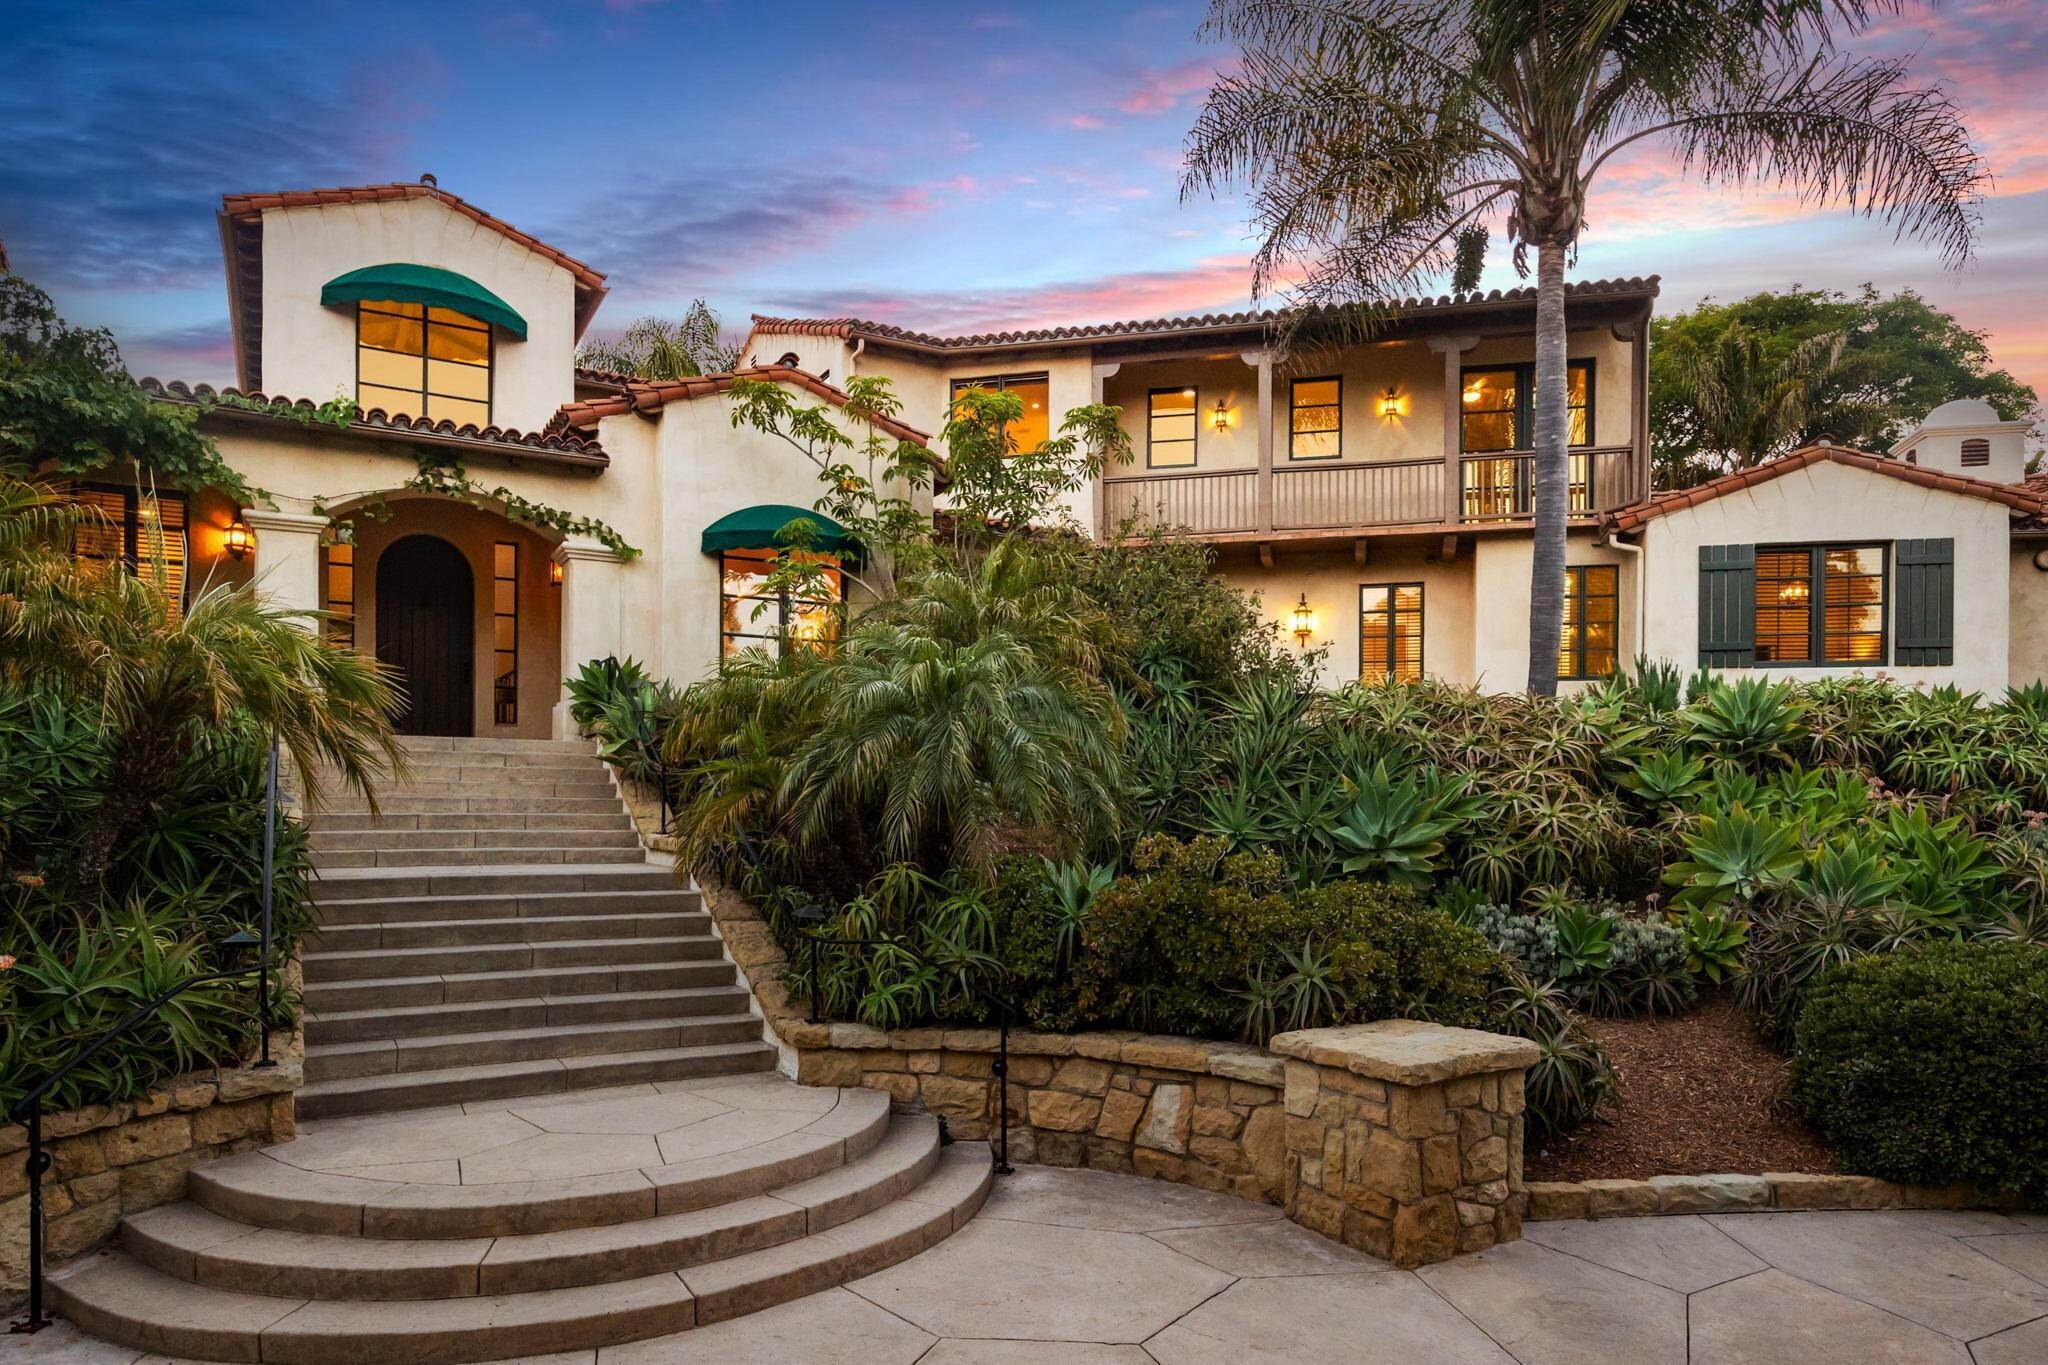 4. Estate for Sale at 4520 Via Esperanza Santa Barbara, California 93110 United States